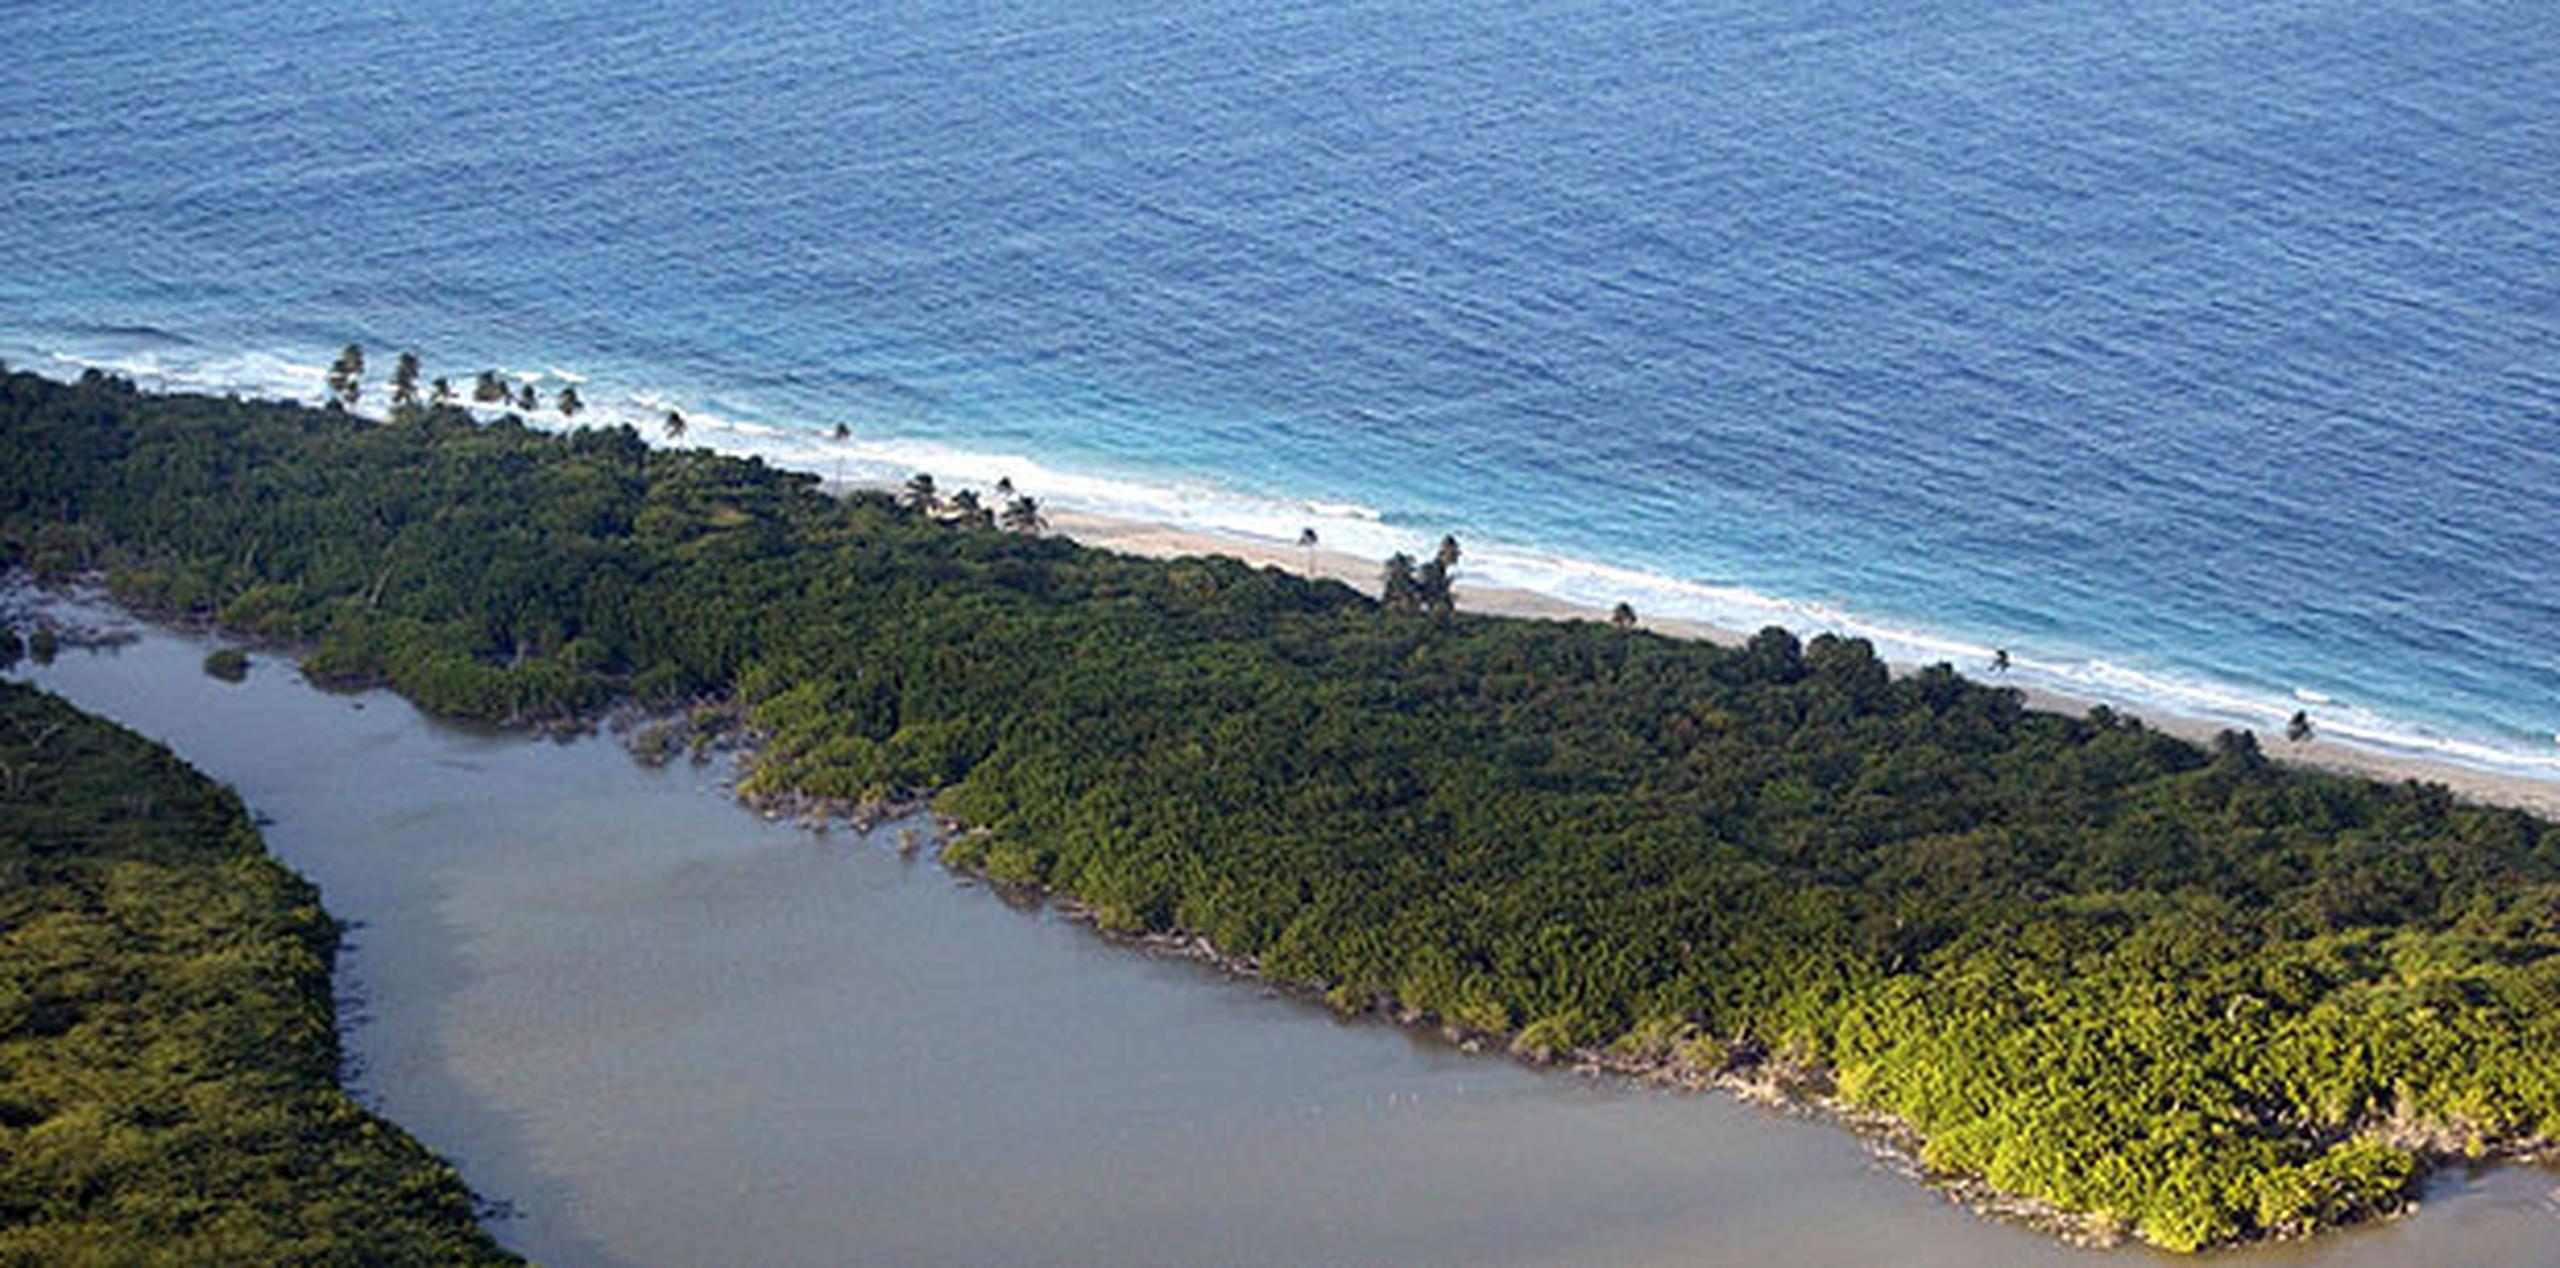 El hallazgo se produjo en la playa Zoni, de Culebra. (Archivo)